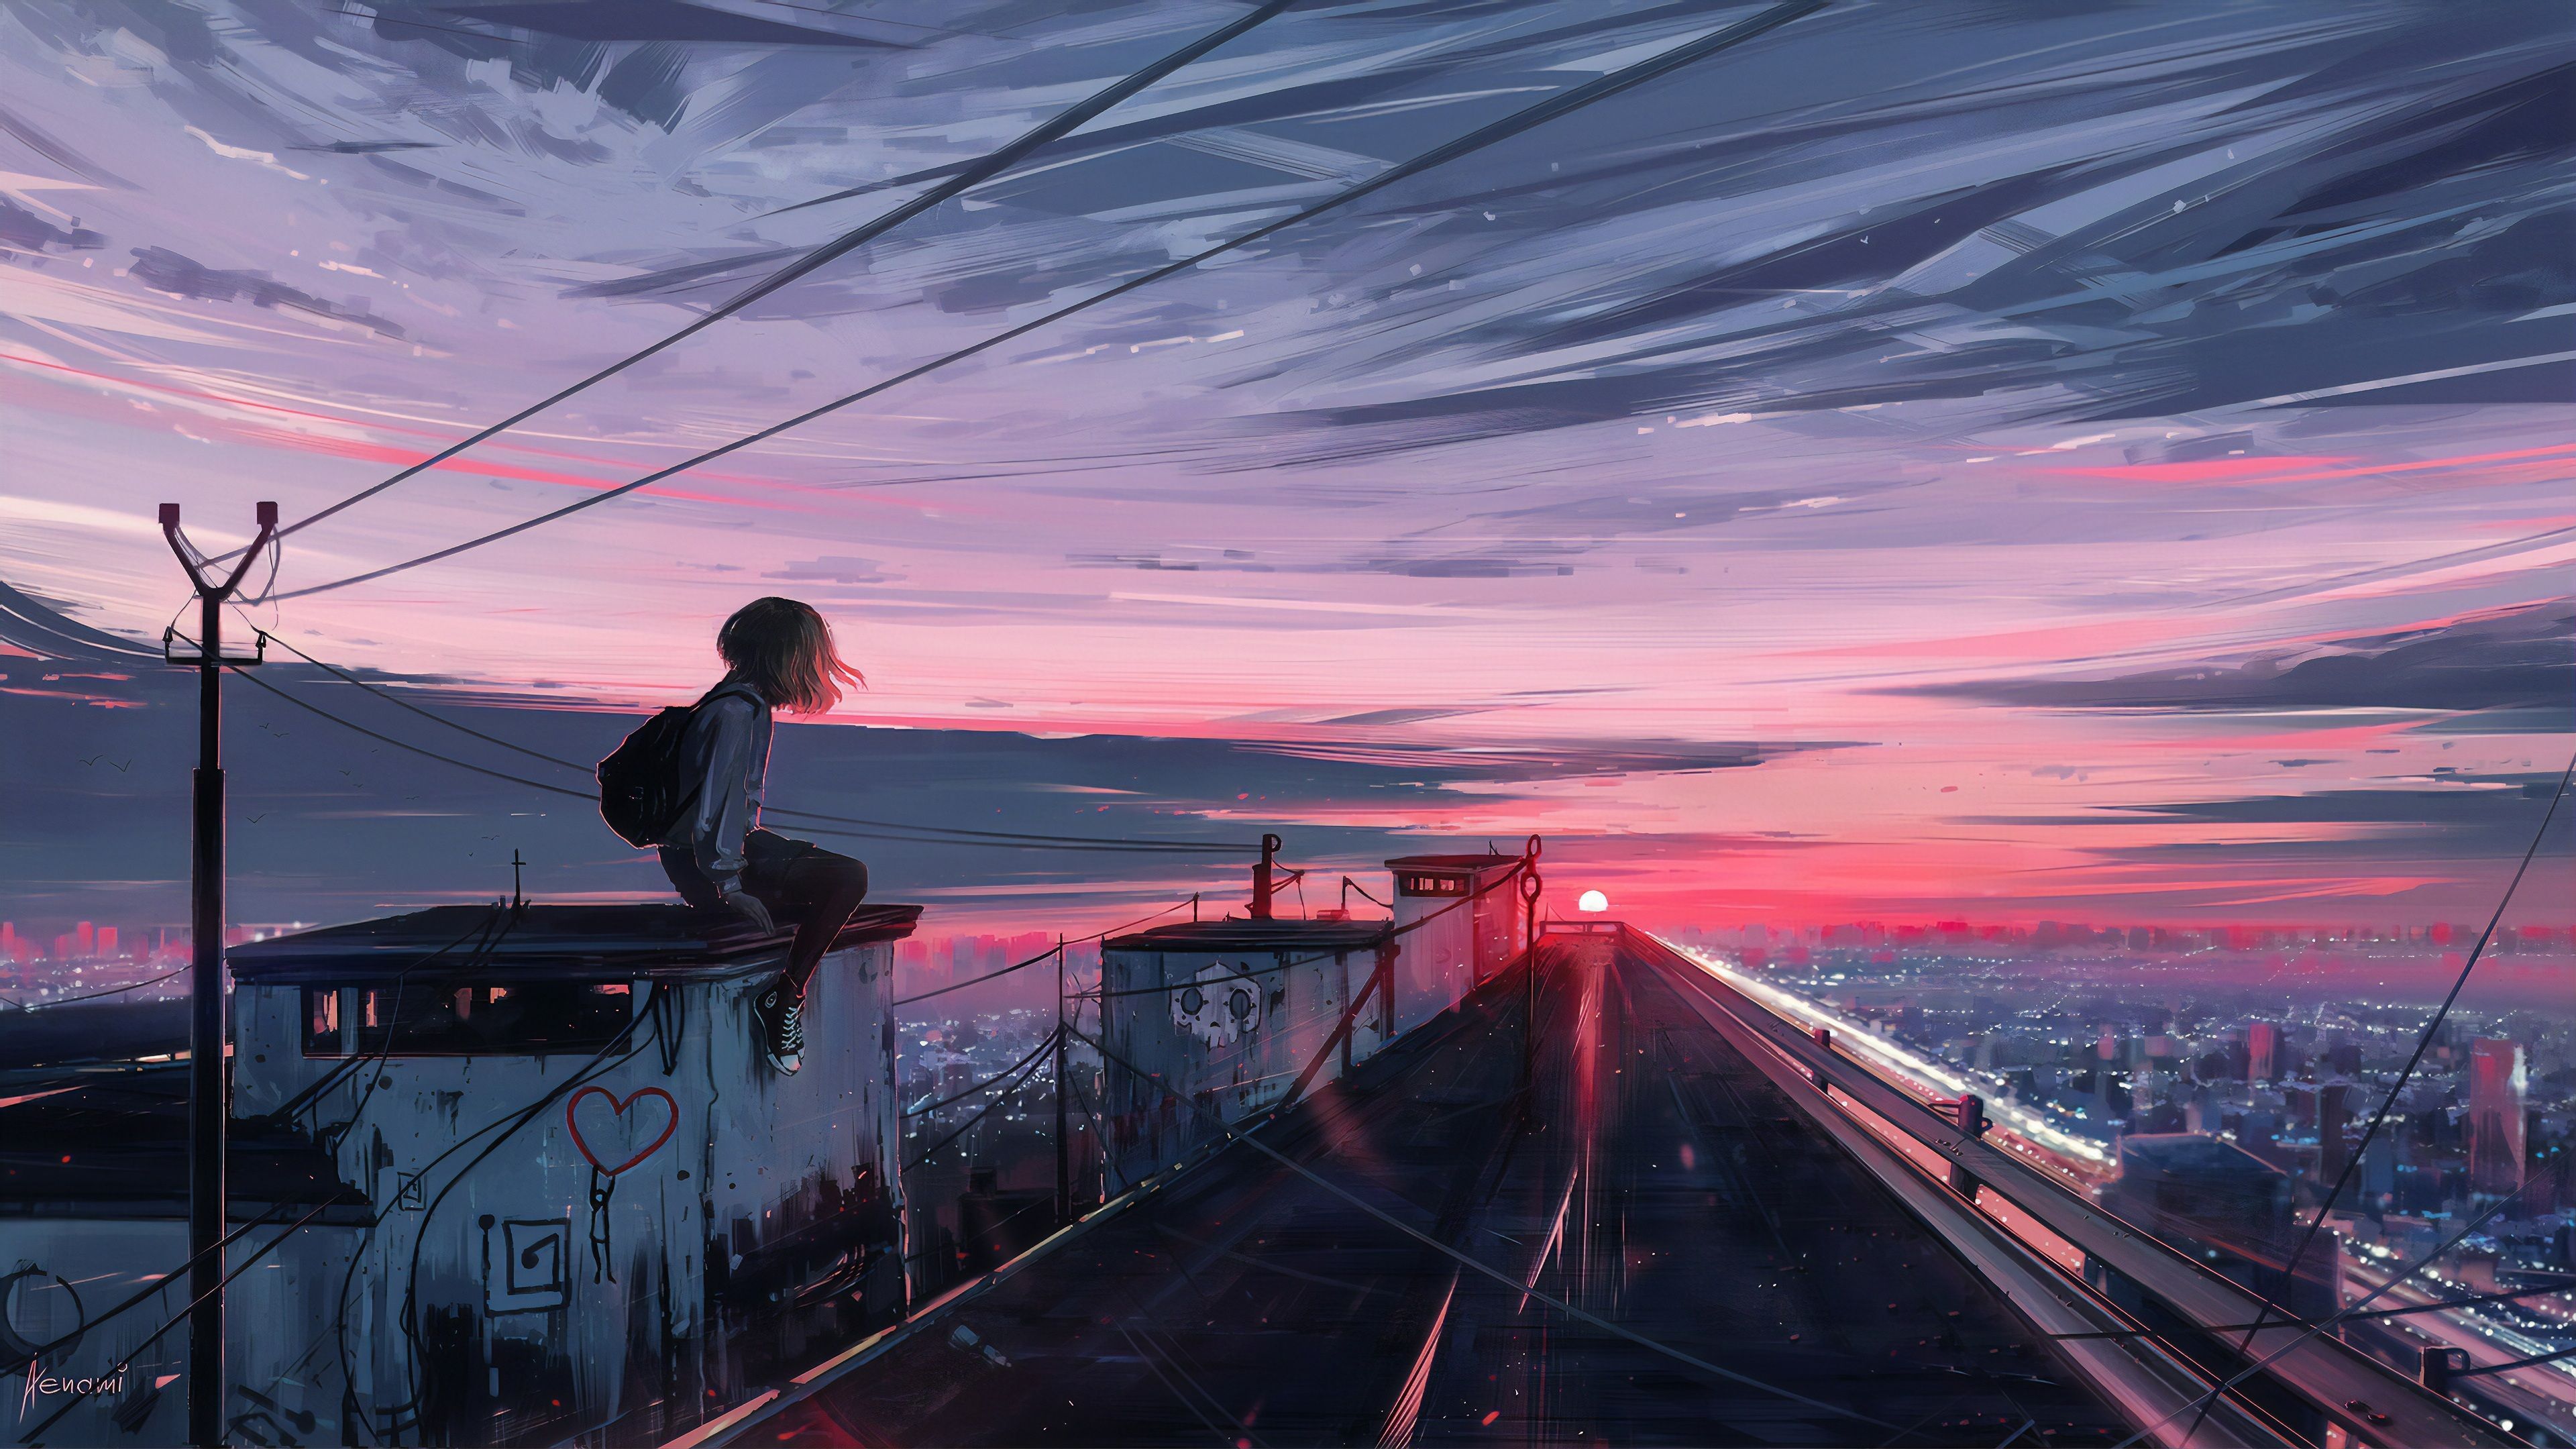  Anime Hintergrundbild 3840x2160. Aesthetic Anime Sunset Wallpaper. Anime scenery, Landscape wallpaper, Scenery wallpaper